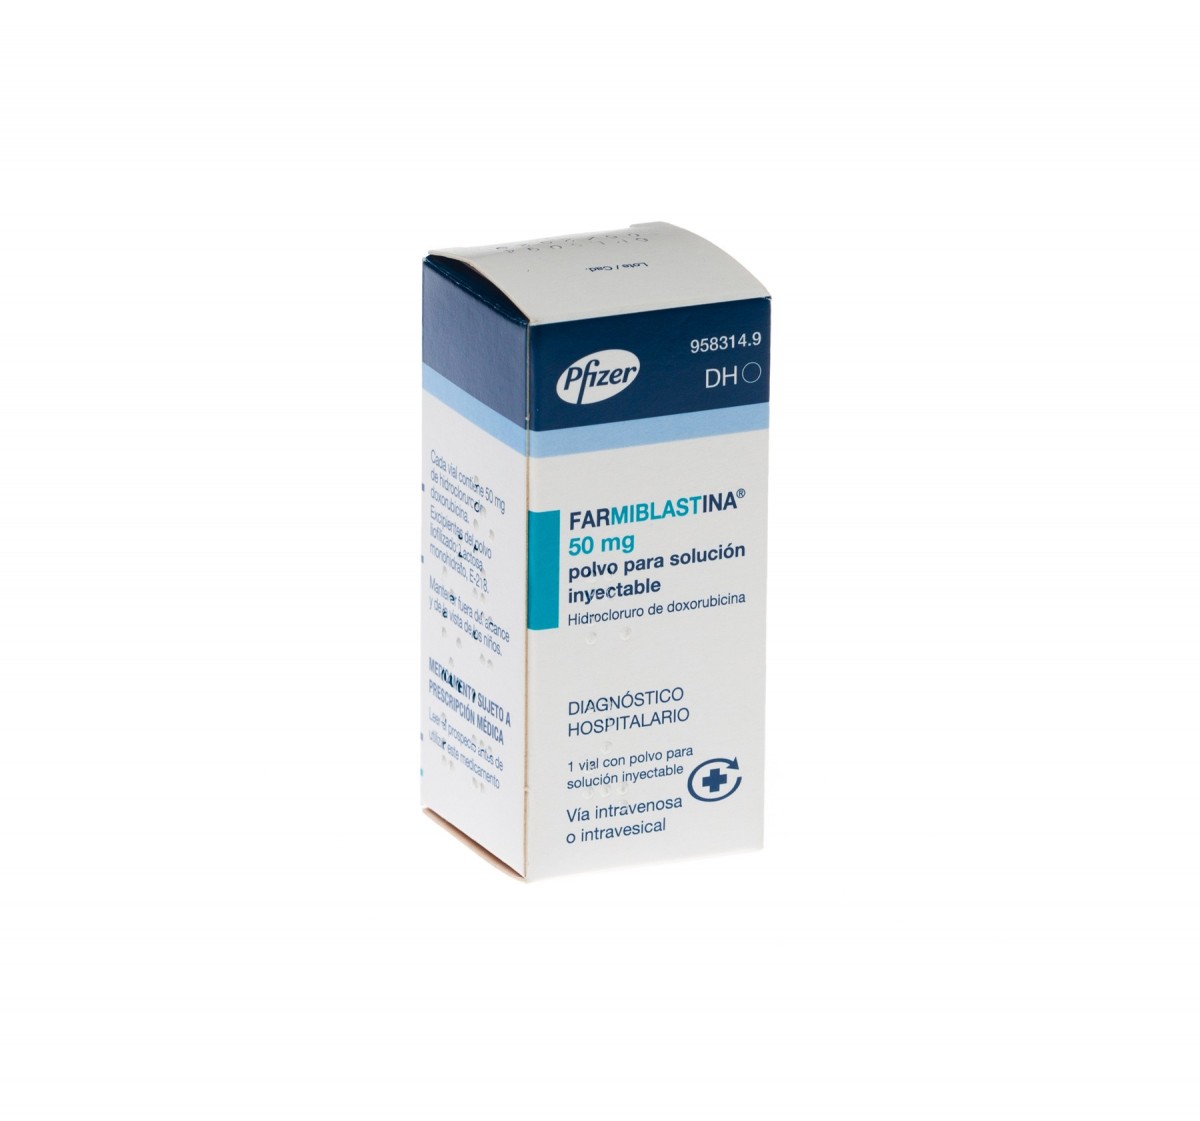 FARMIBLASTINA 50 mg POLVO PARA SOLUCION INYECTABLE, 1 vial fotografía del envase.